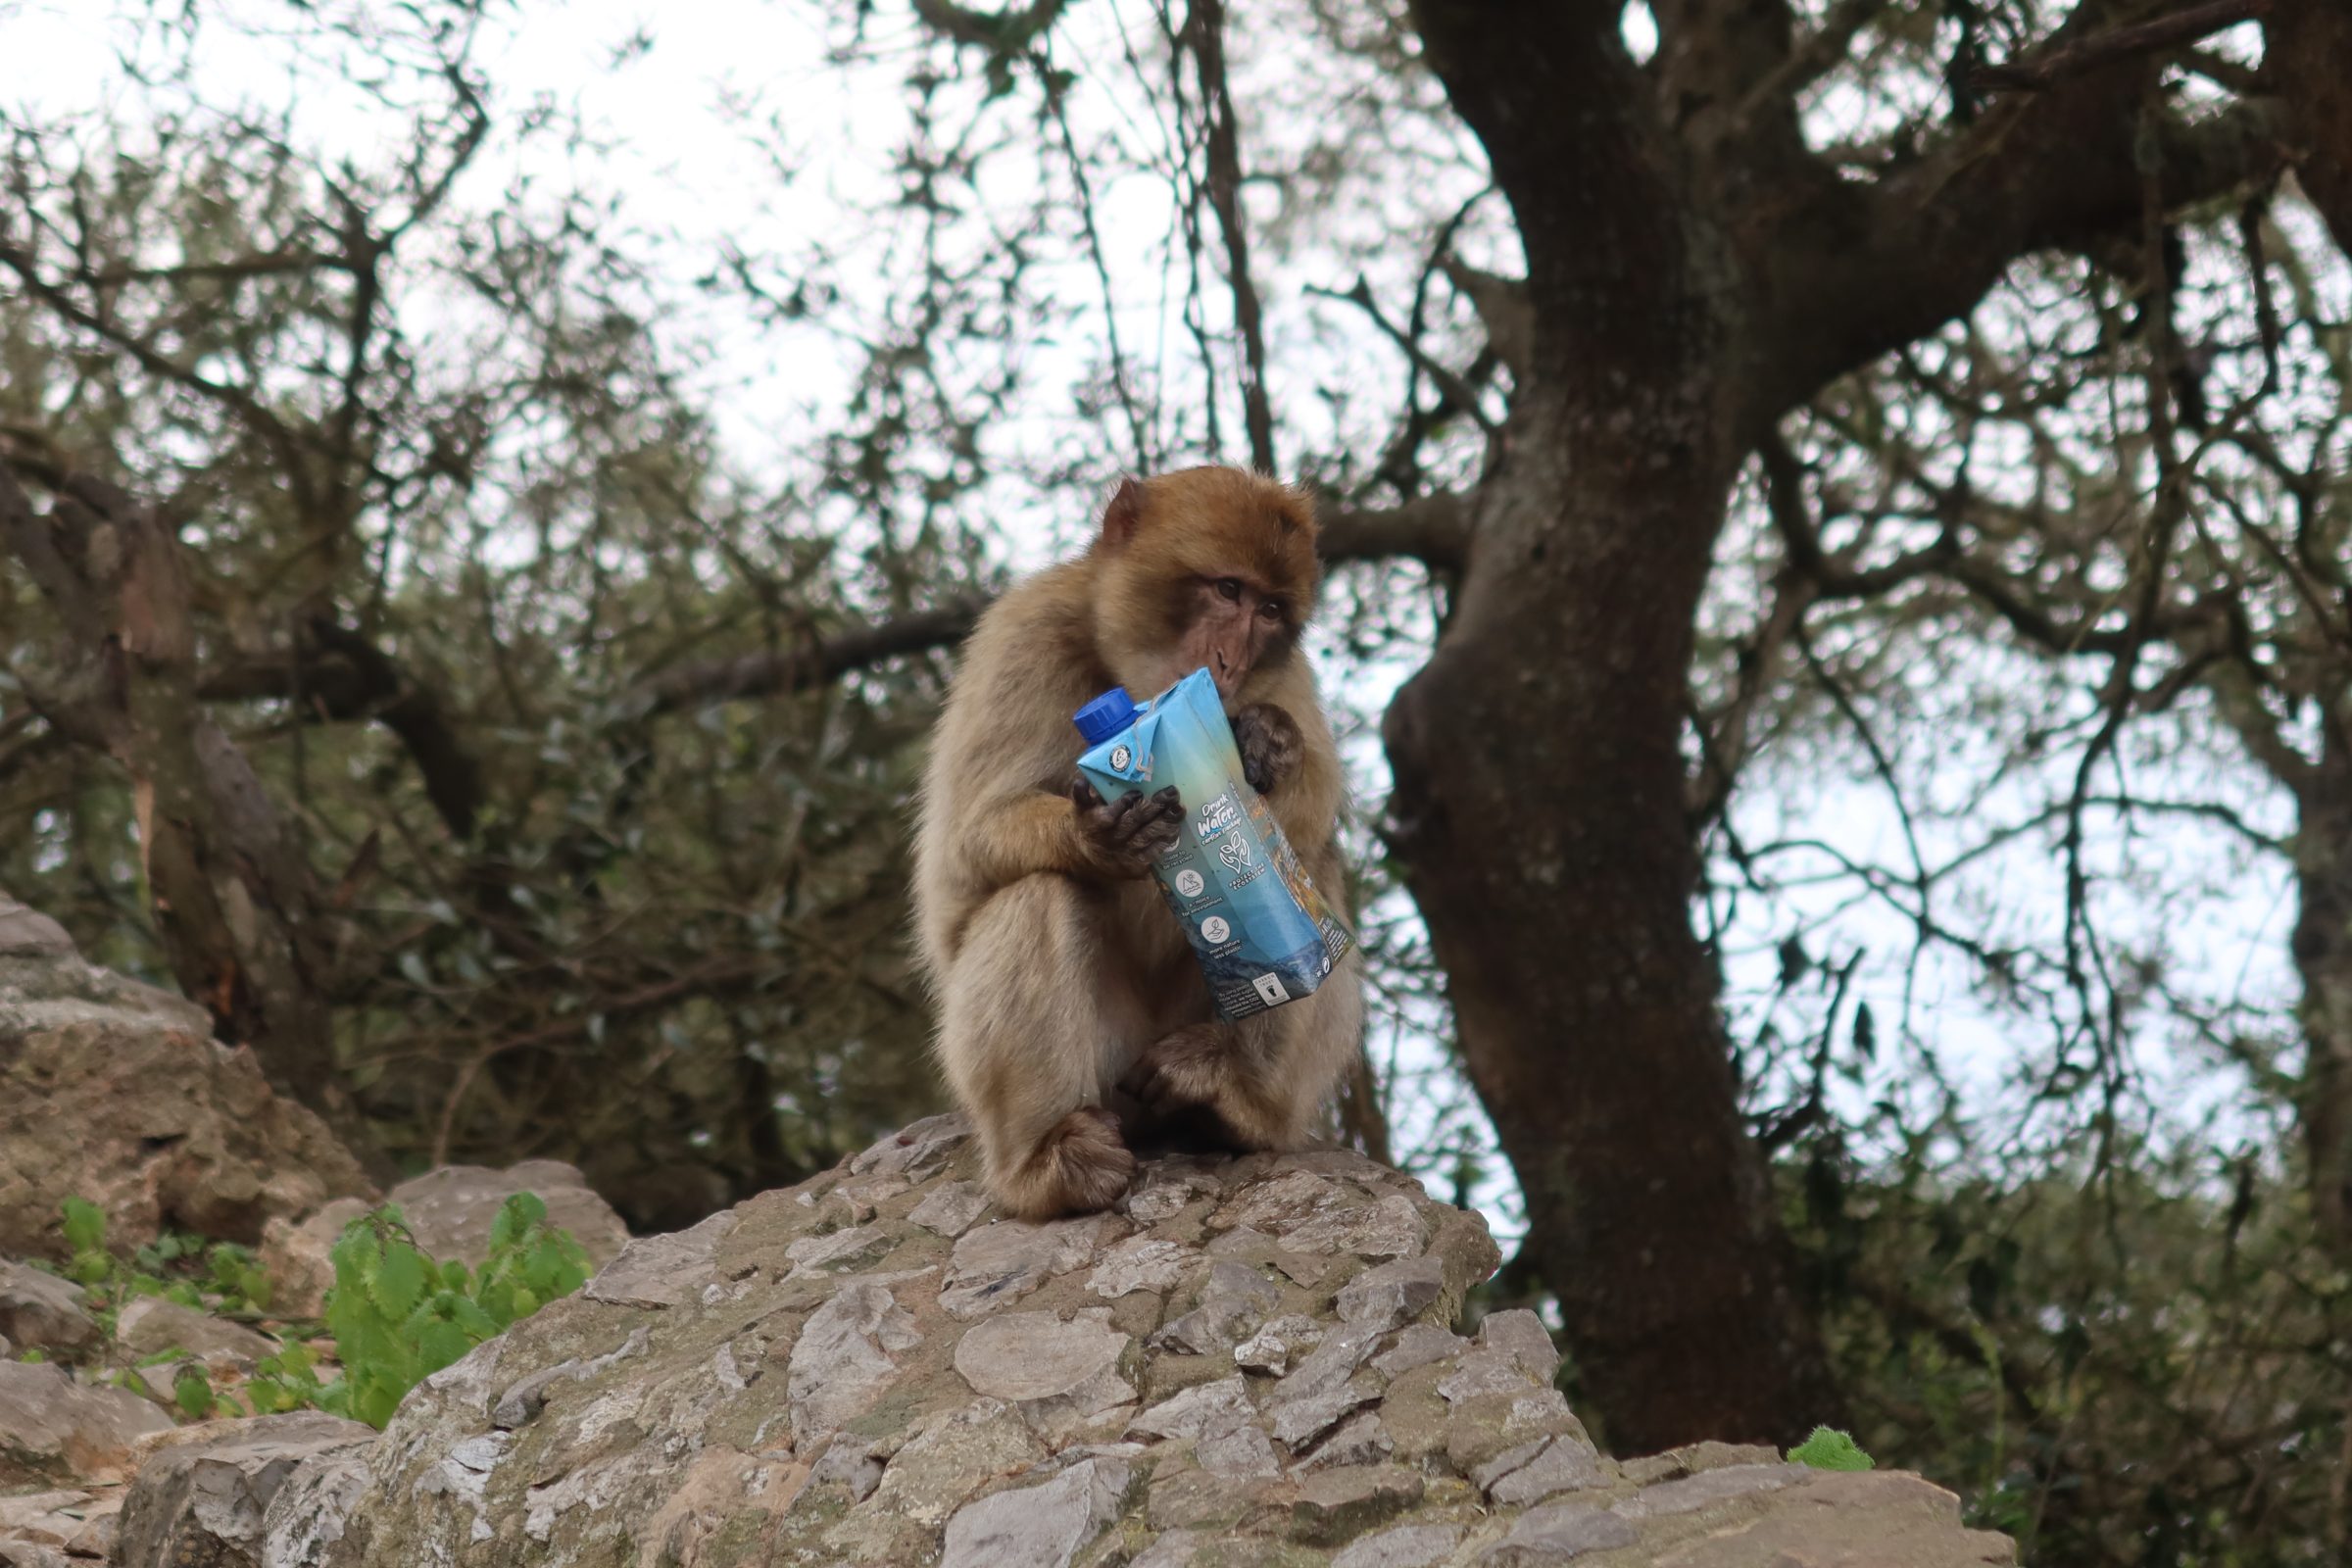 Macacos soltos no Rochedo de Gibraltar | Dicas de motorhome e locais de interesse no sul da Espanha